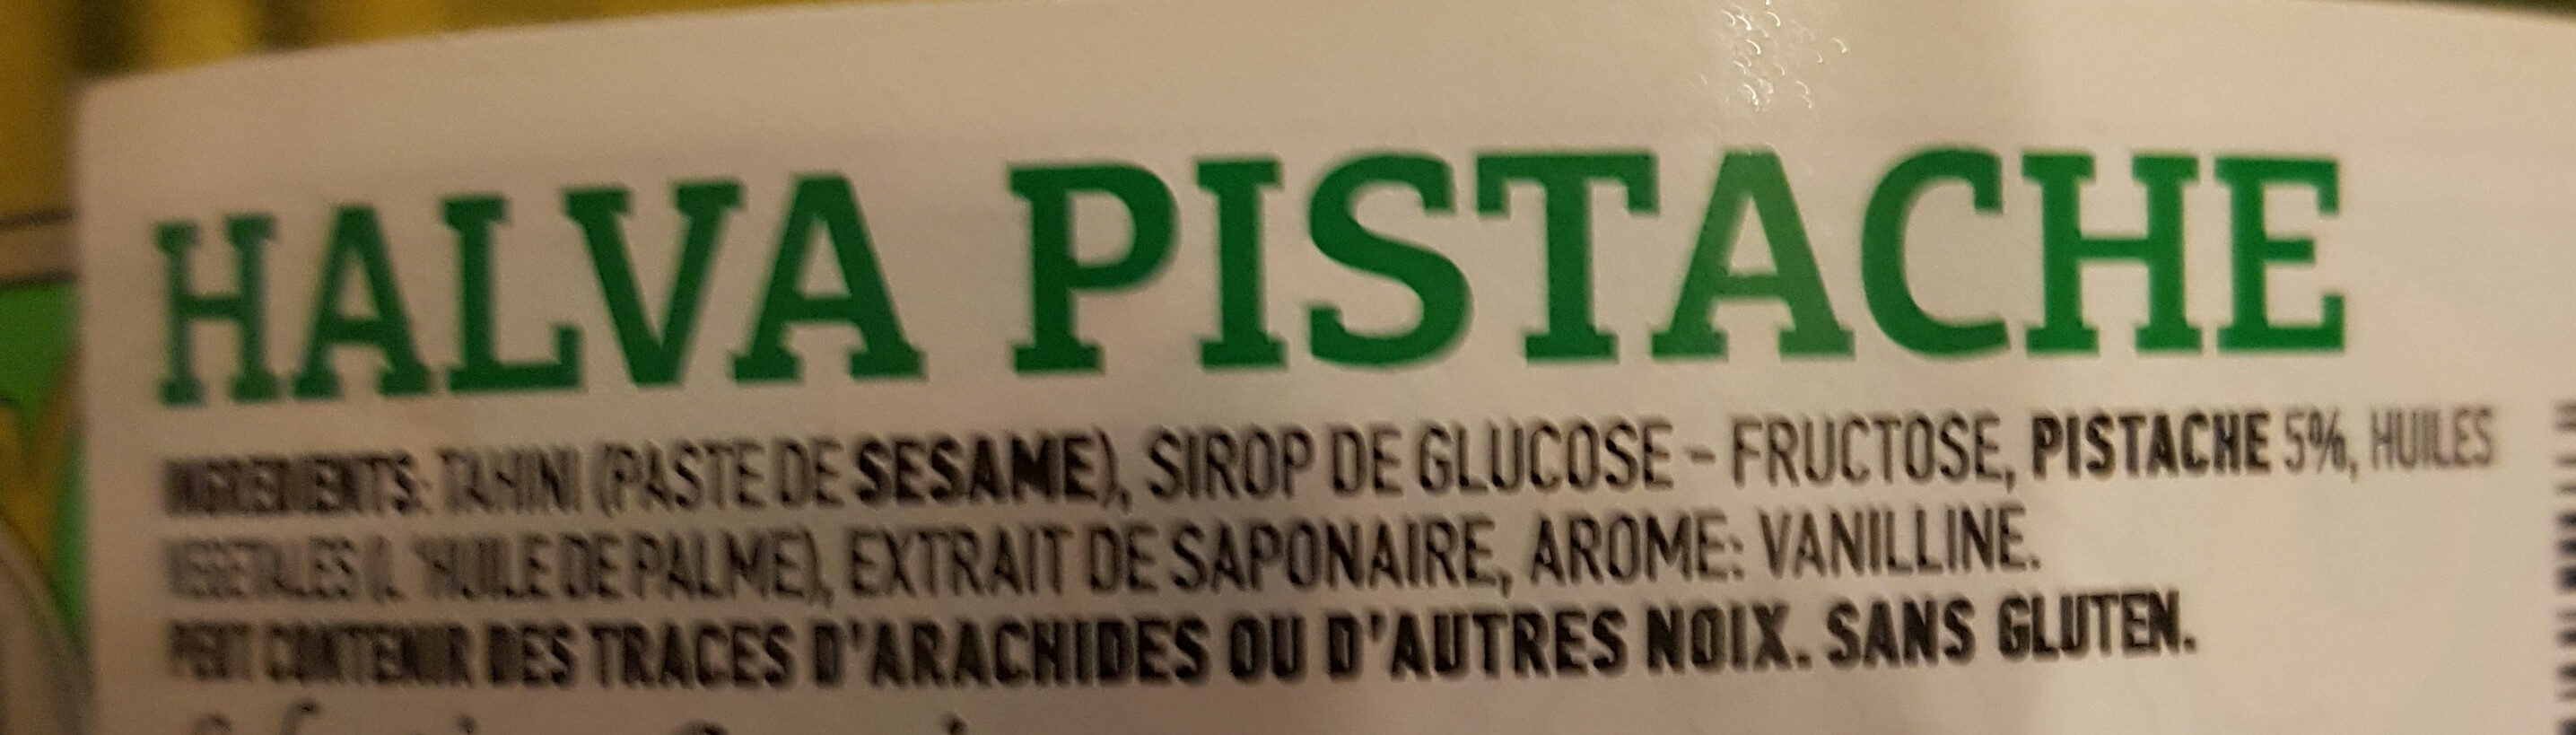 Halva pistache - Ingredients - fr